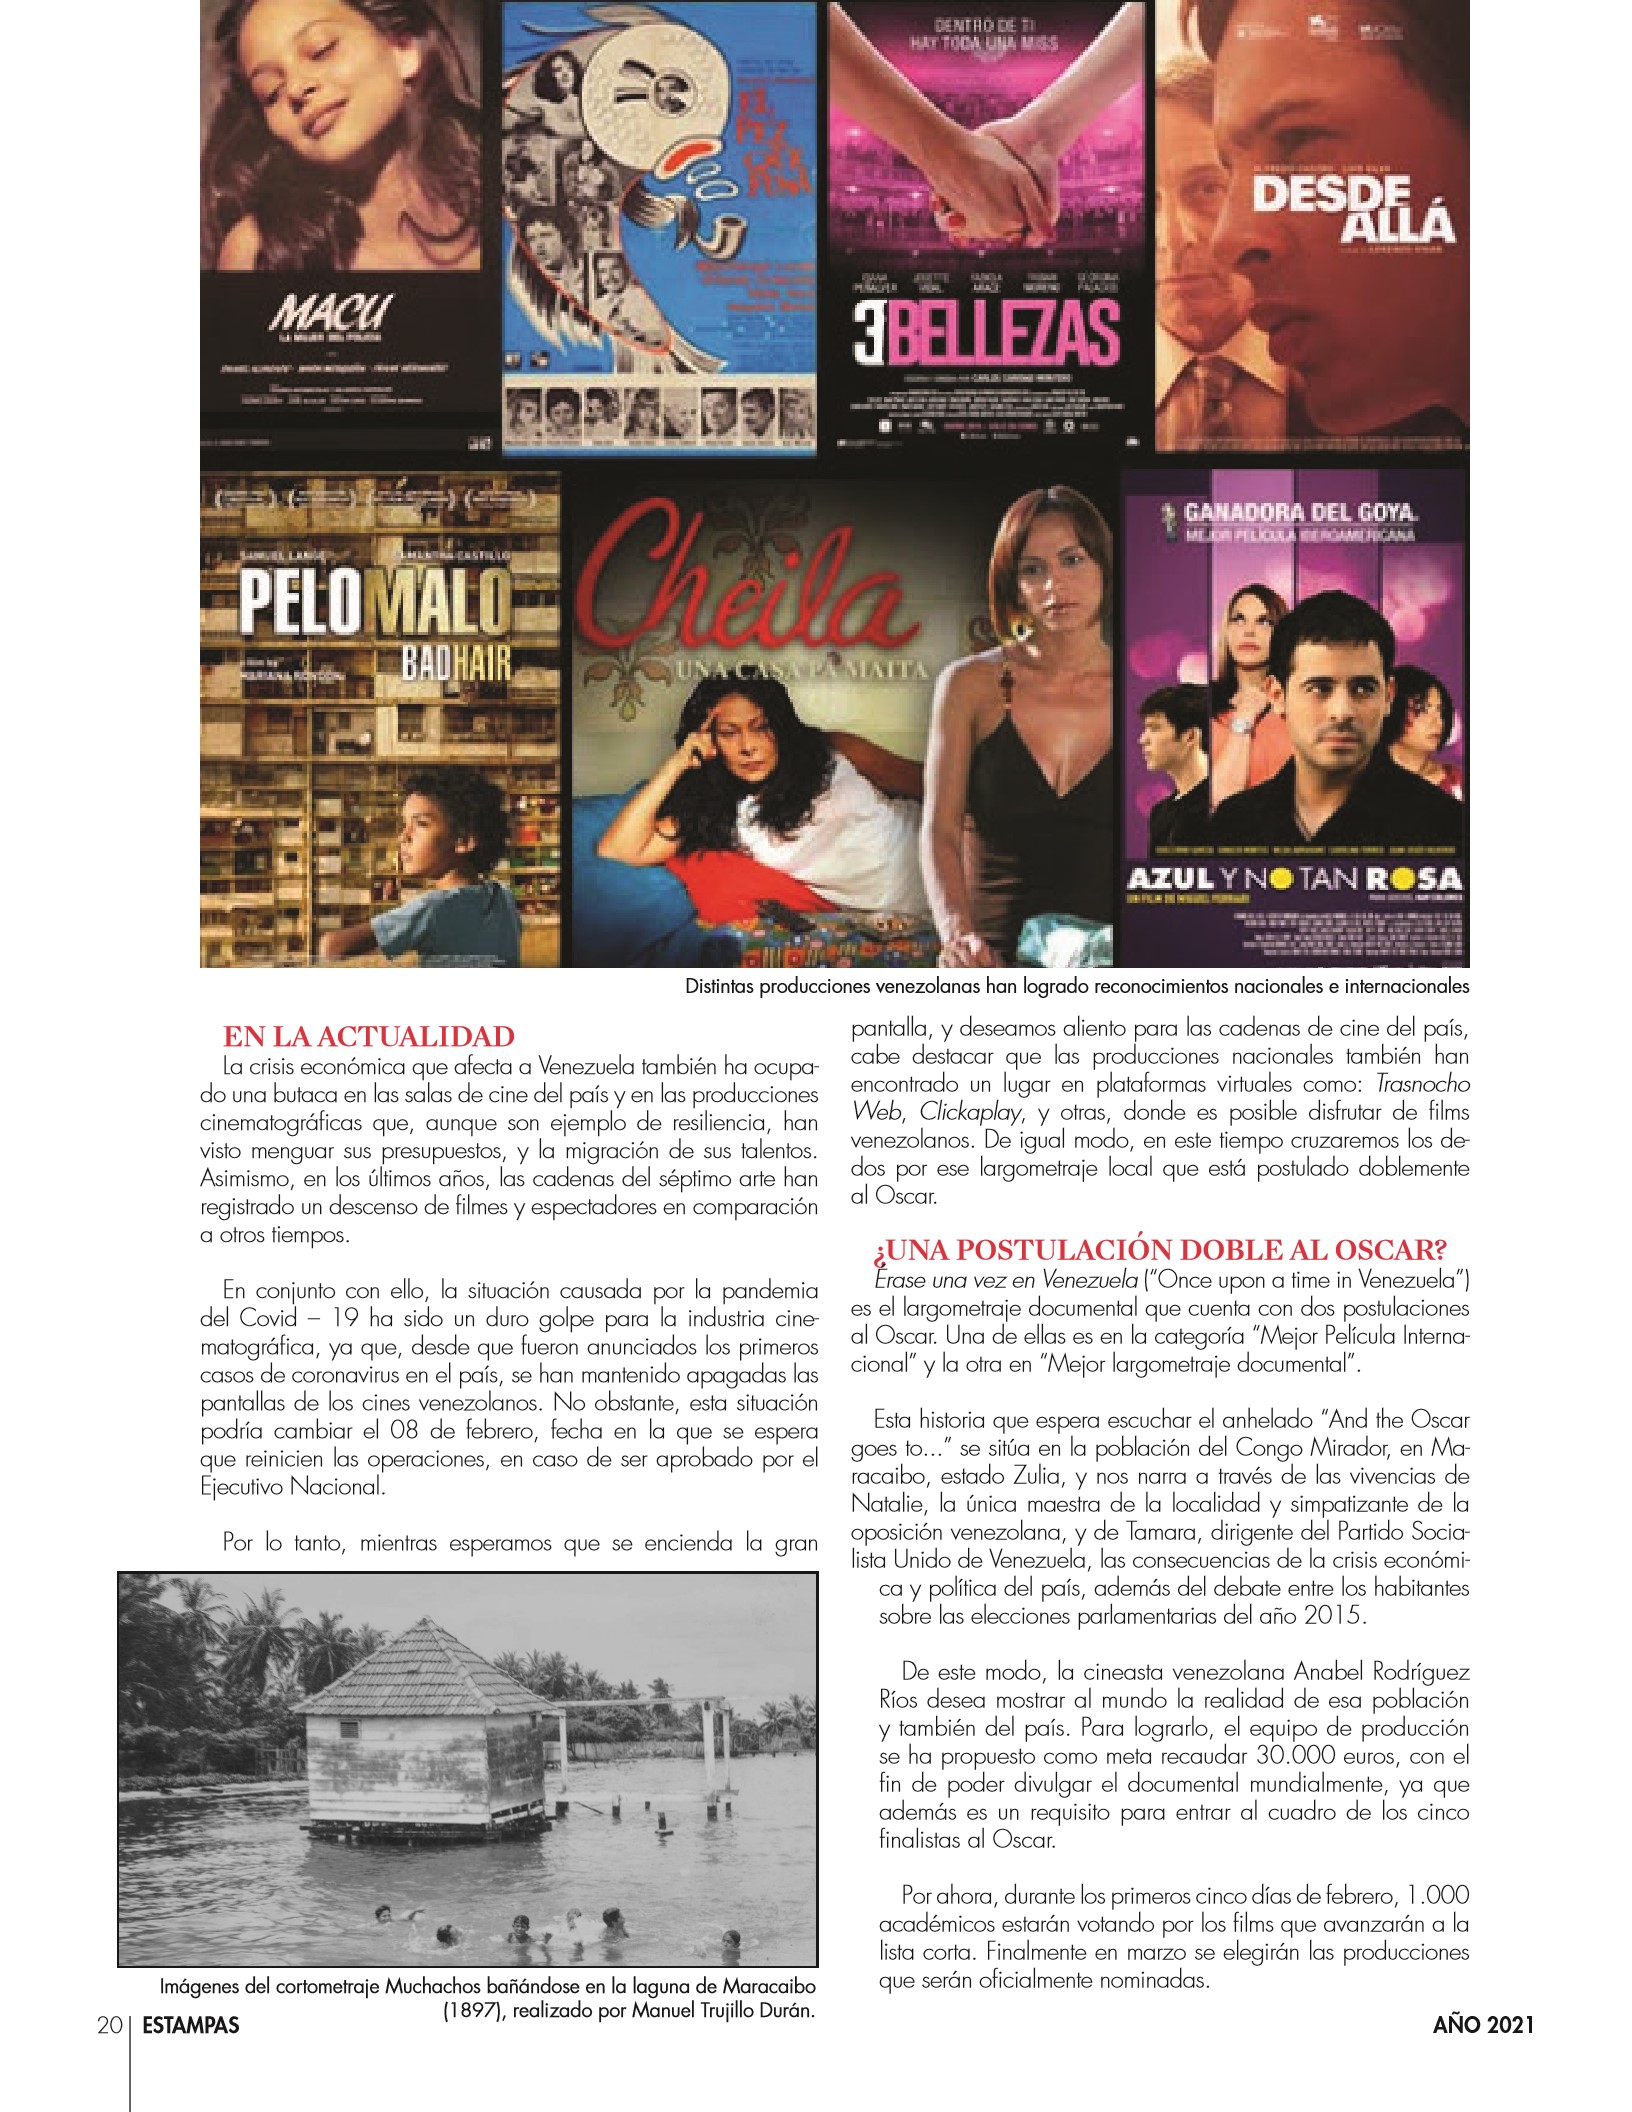 20-REV Entretenimiento : Andrea Solórzano Mota - Memoria histórica de un arte que empezó a rodarse en Maracaibo